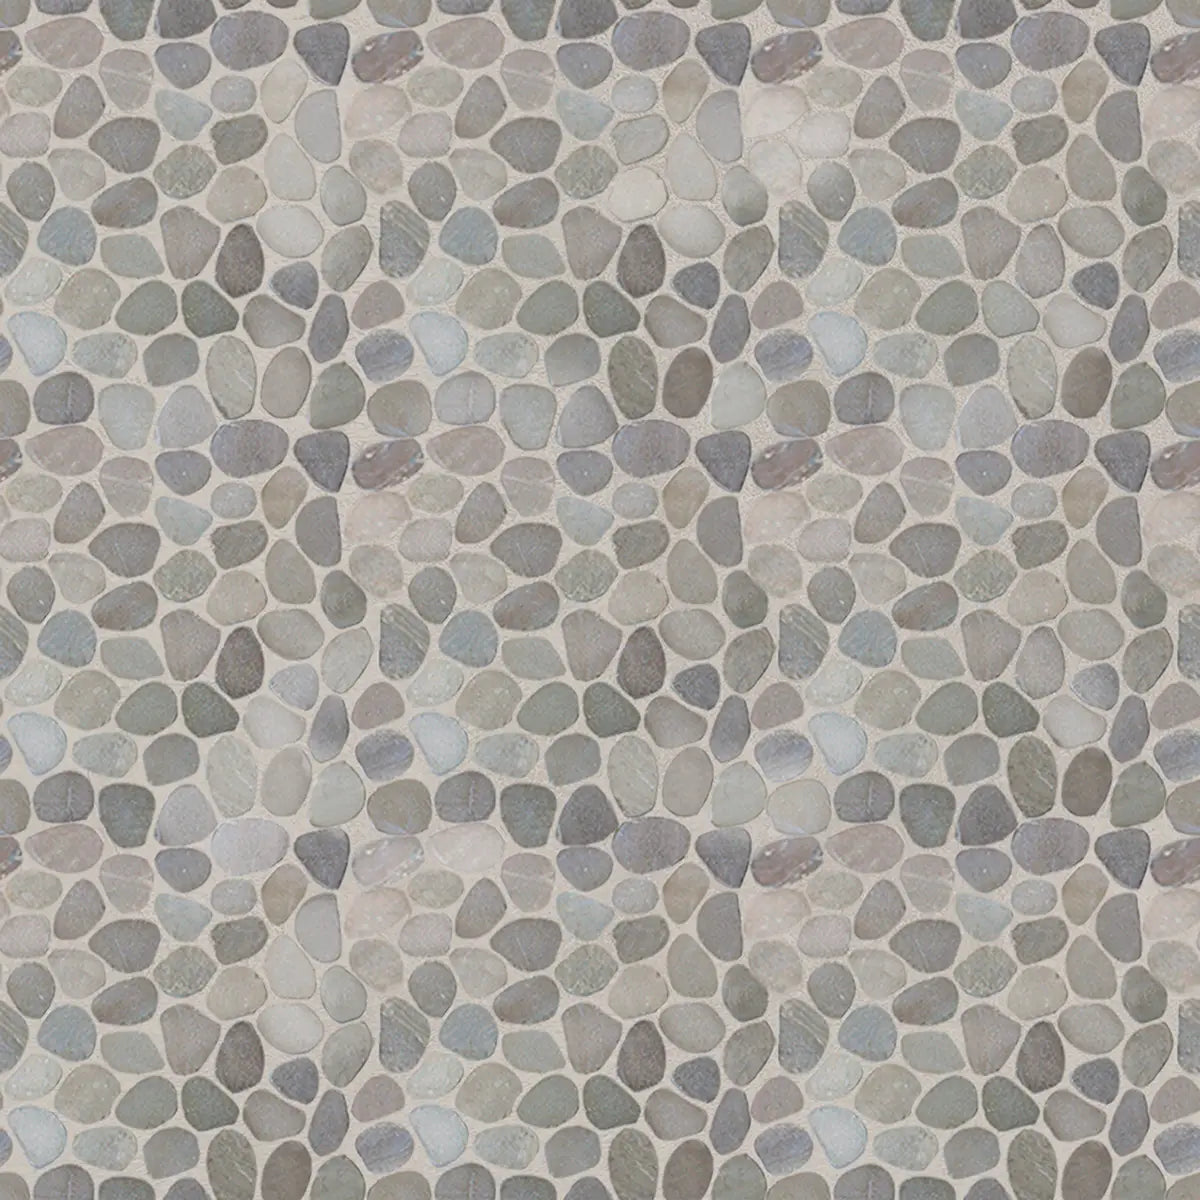 Pebble Tile, Tan Sliced Pebble Mosaic Wall & Floor Tile